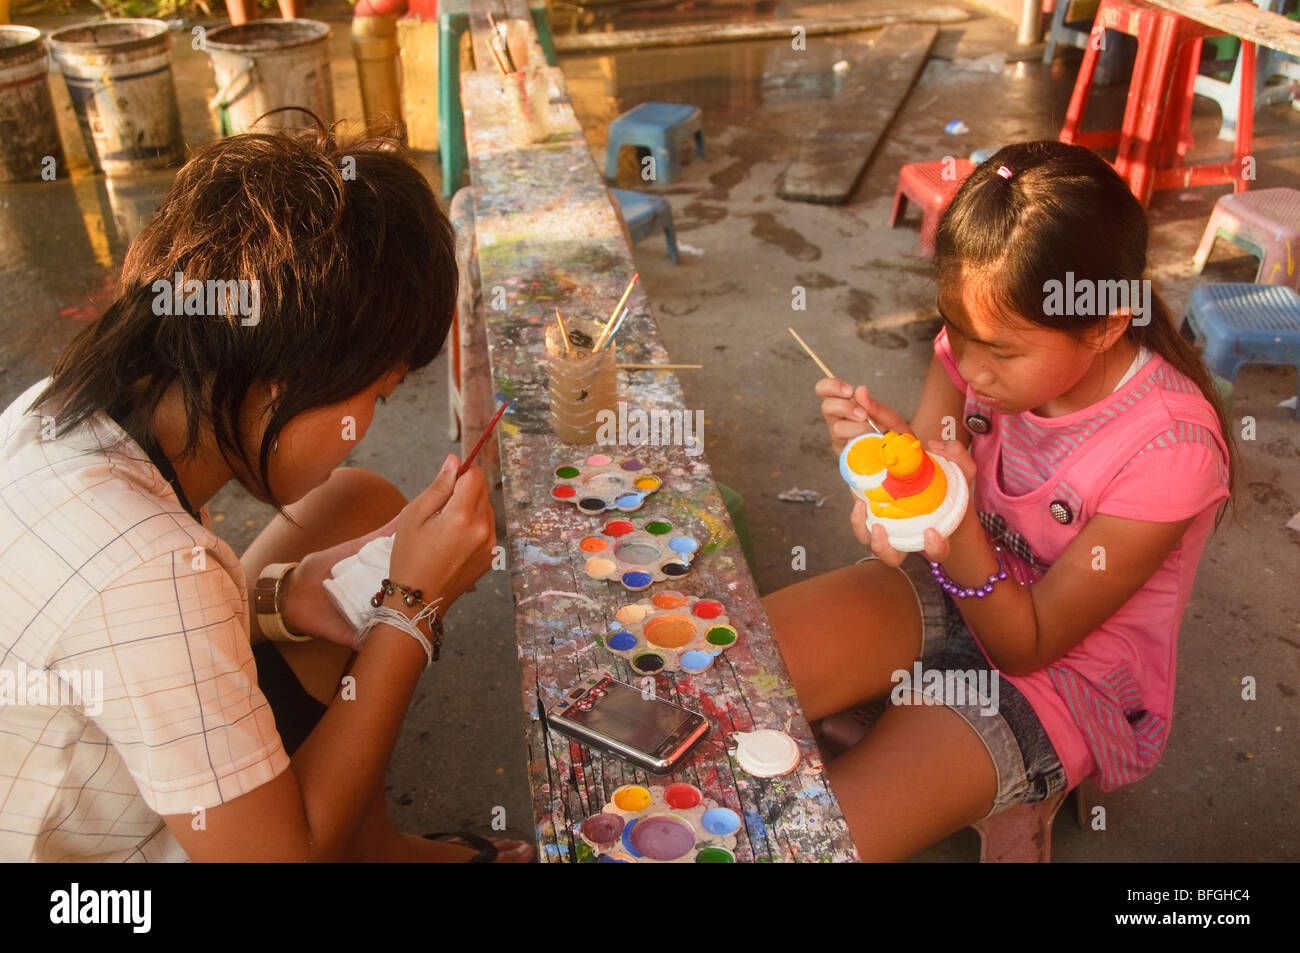 Peinture filles thaïlandaises à Bangkok Chinatown Banque D'Images